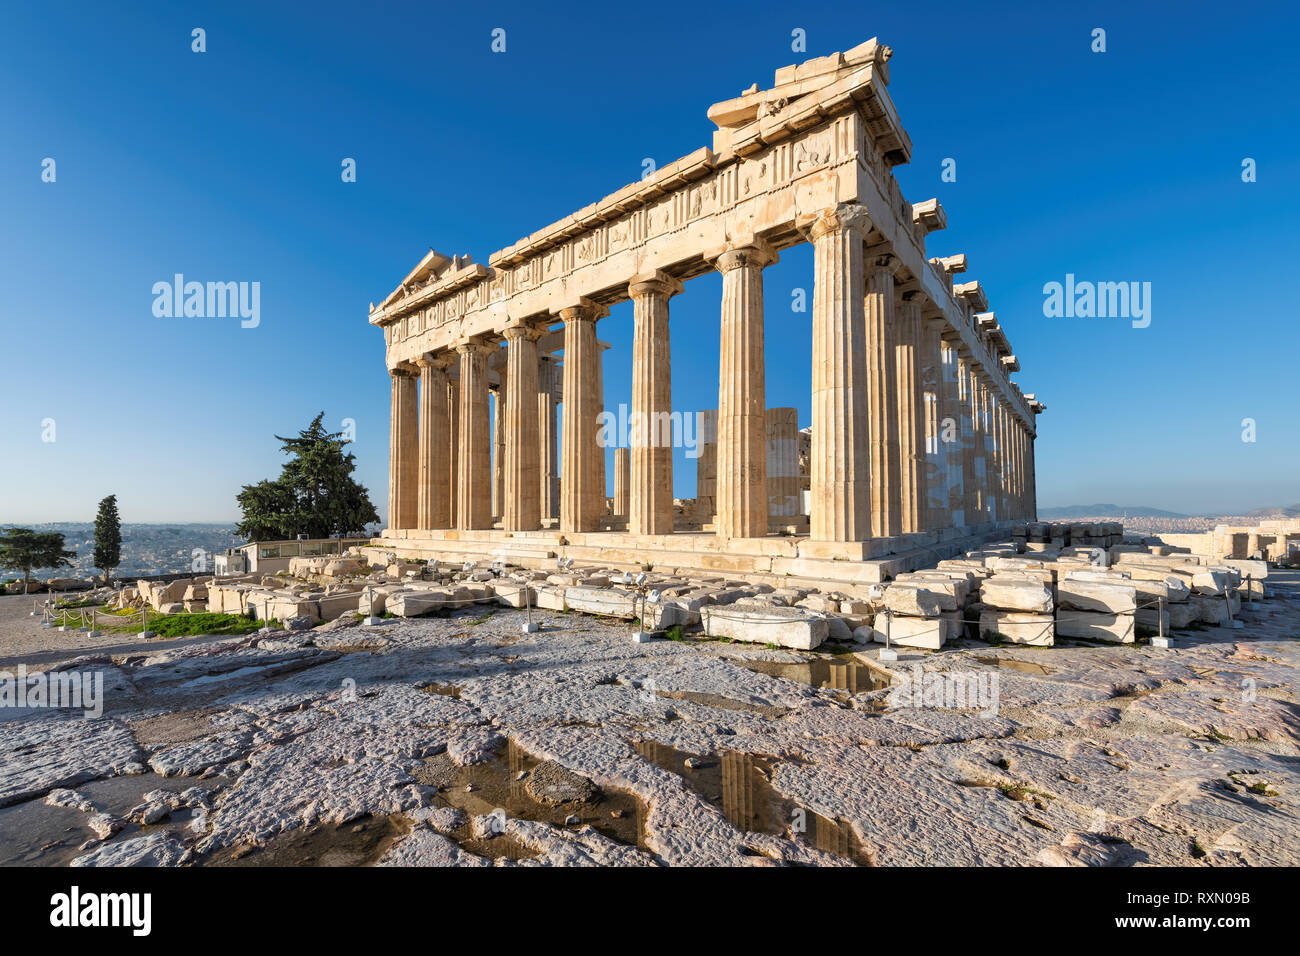 Parthenon temple in Acropolis, Athens, Greece. Stock Photo